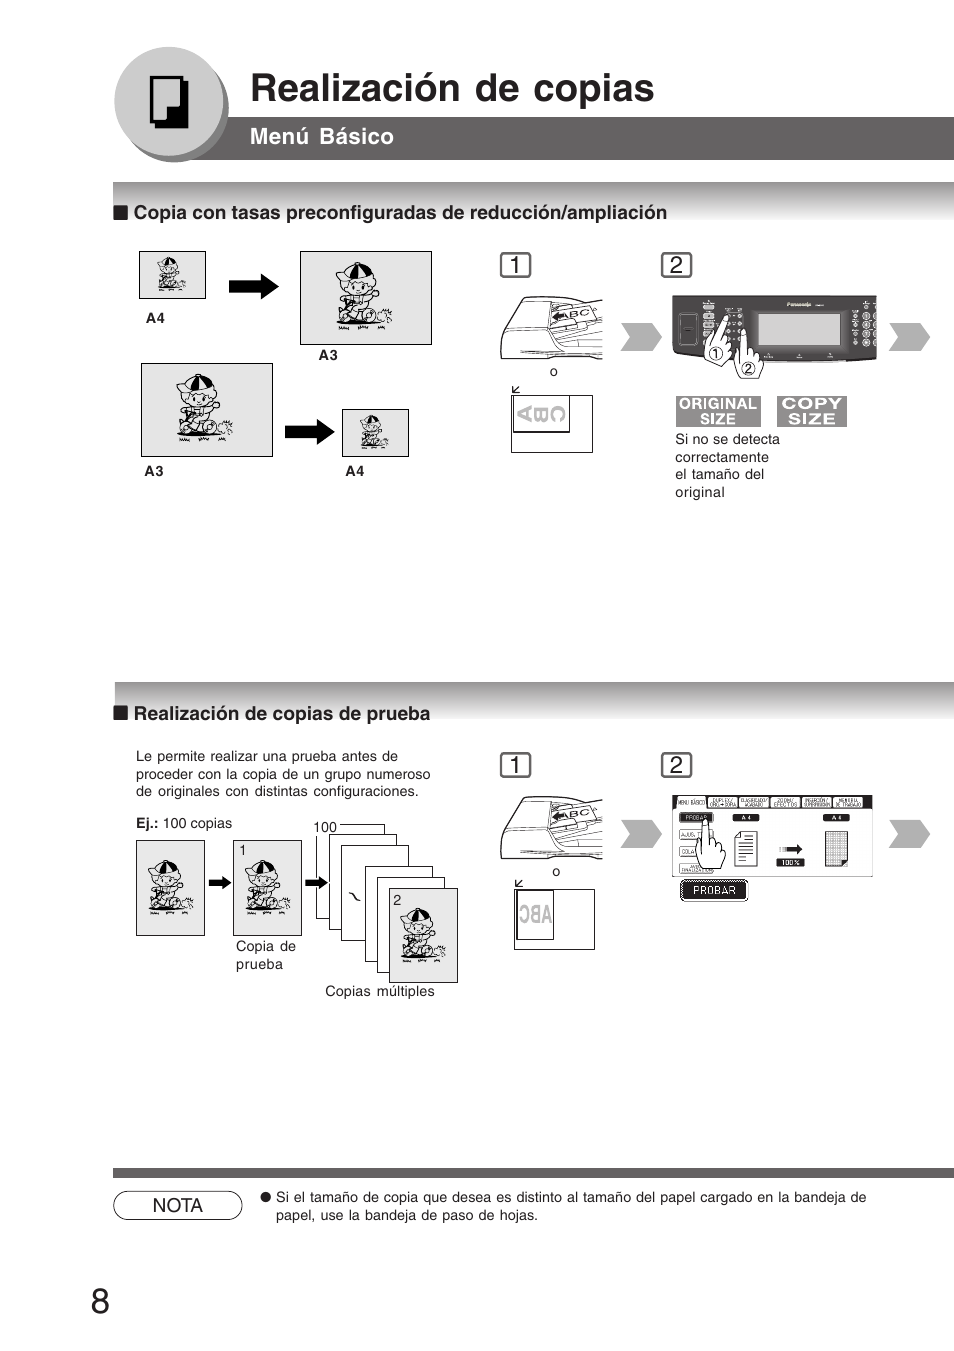 Realización de copias de prueba, Realización de copias, Menú básico | Panasonic DP8035 Manual del usuario | Página 8 / 92